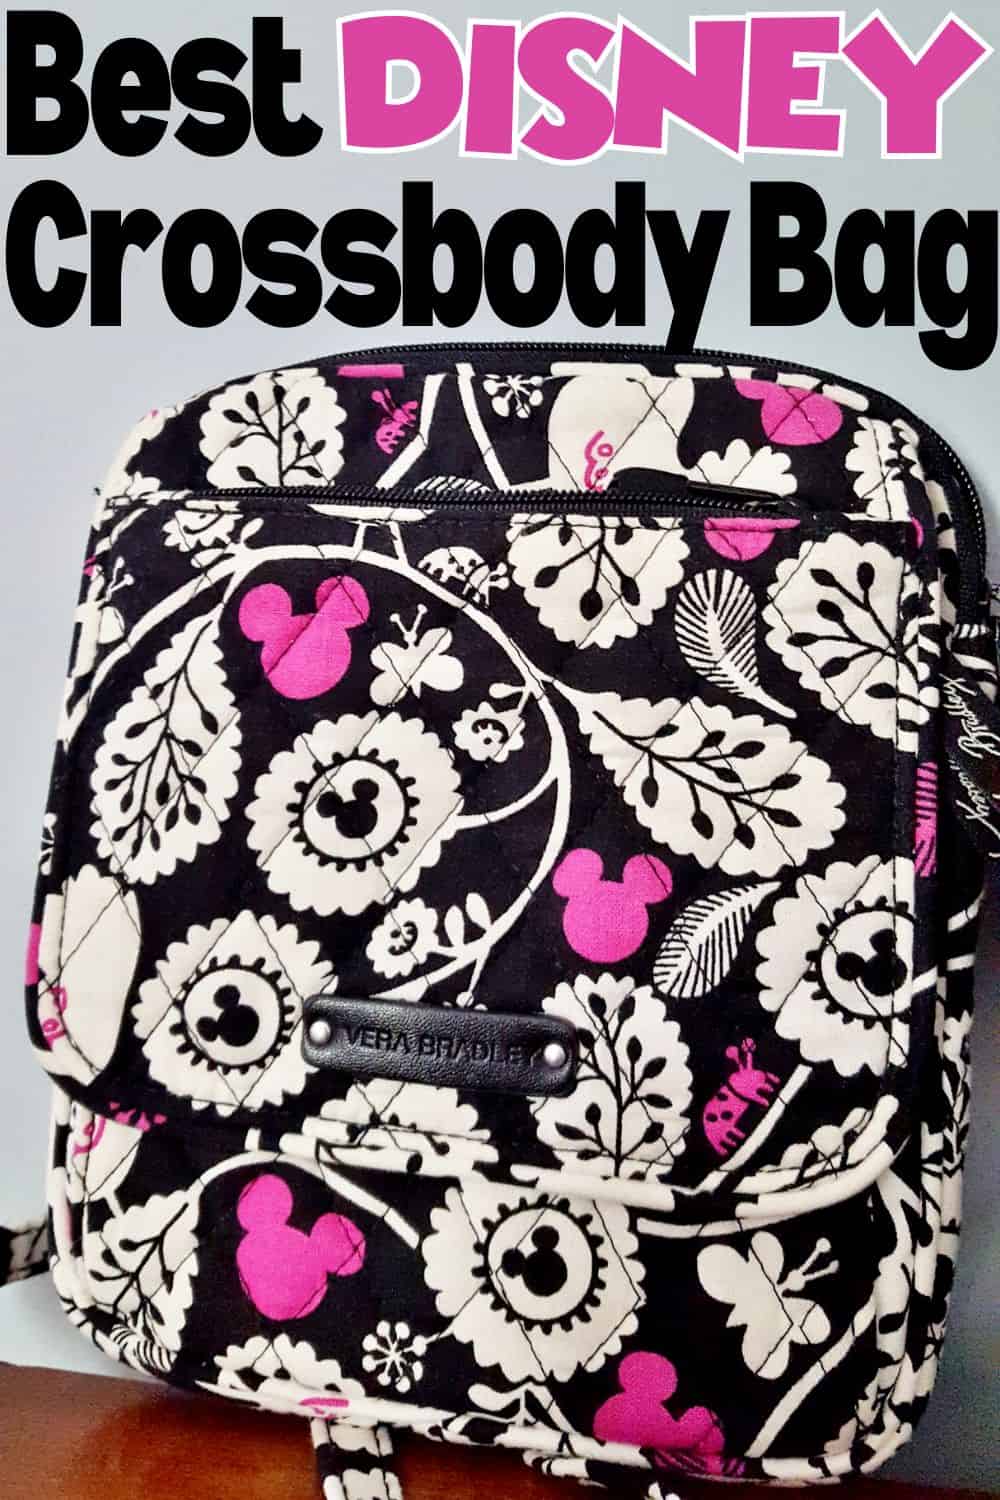 Best Disney Crossbody Bag for the Parks